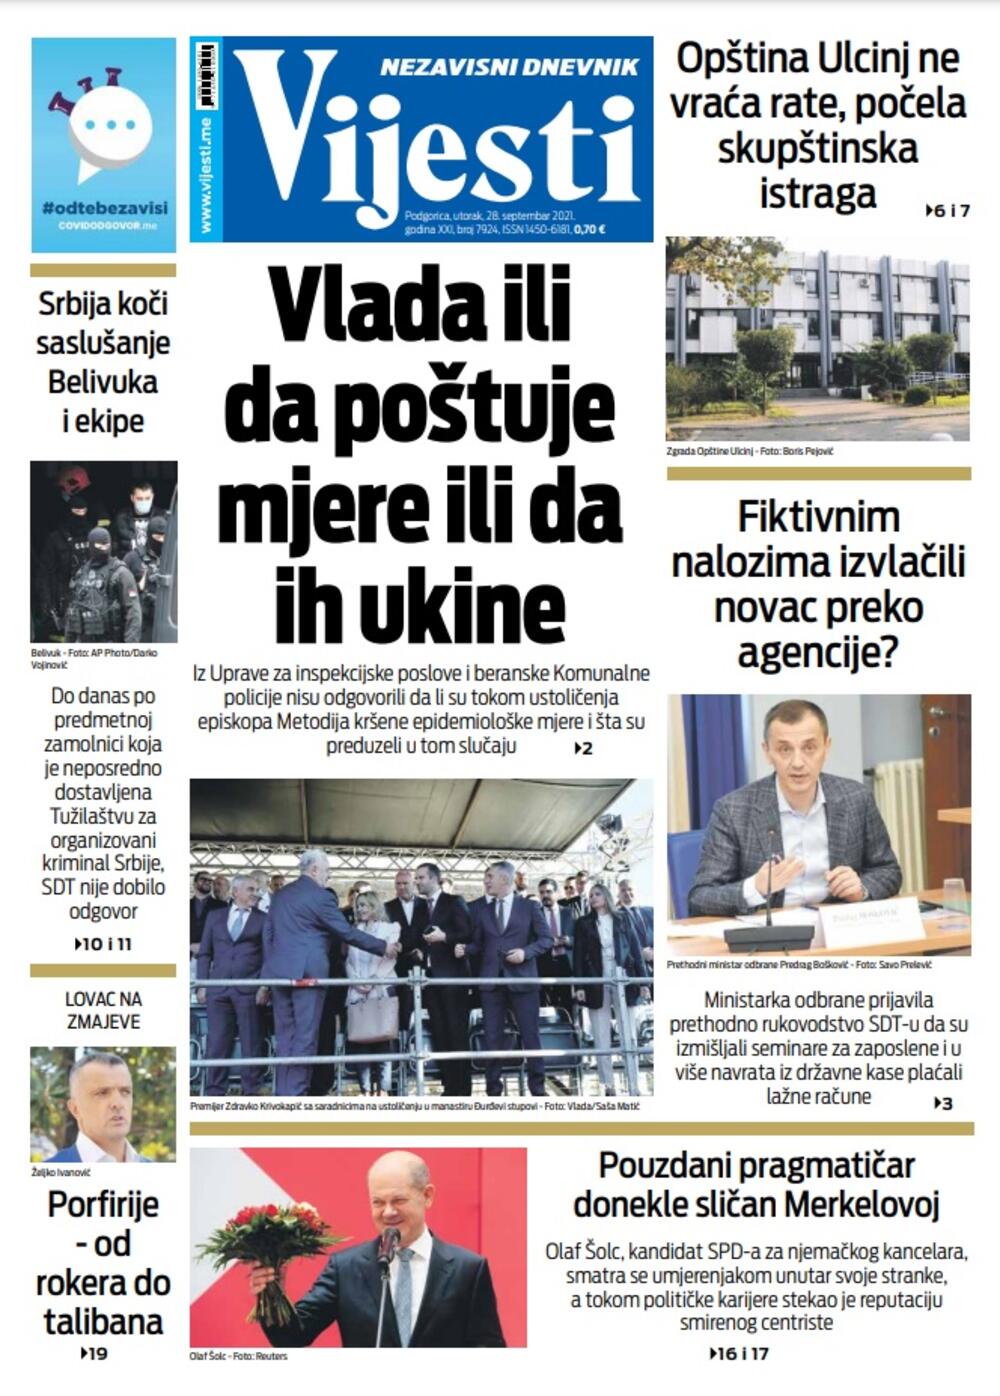 Naslovna strana "Vijesti" za 28. septembar, Foto: Vijesti